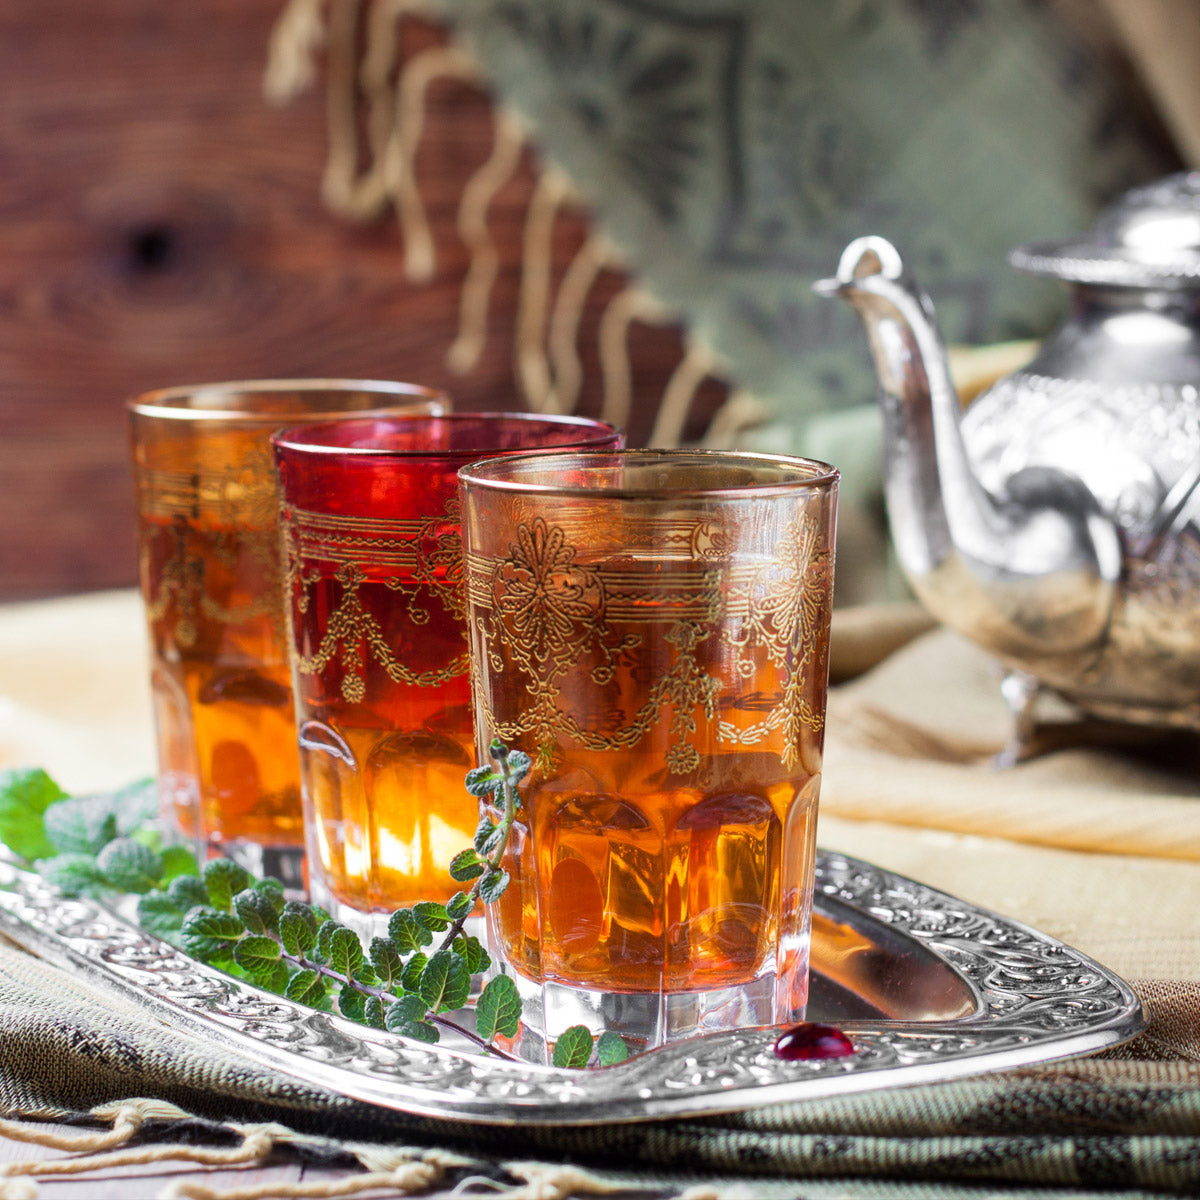 Moroccan tea culture - Moroccan mint tea